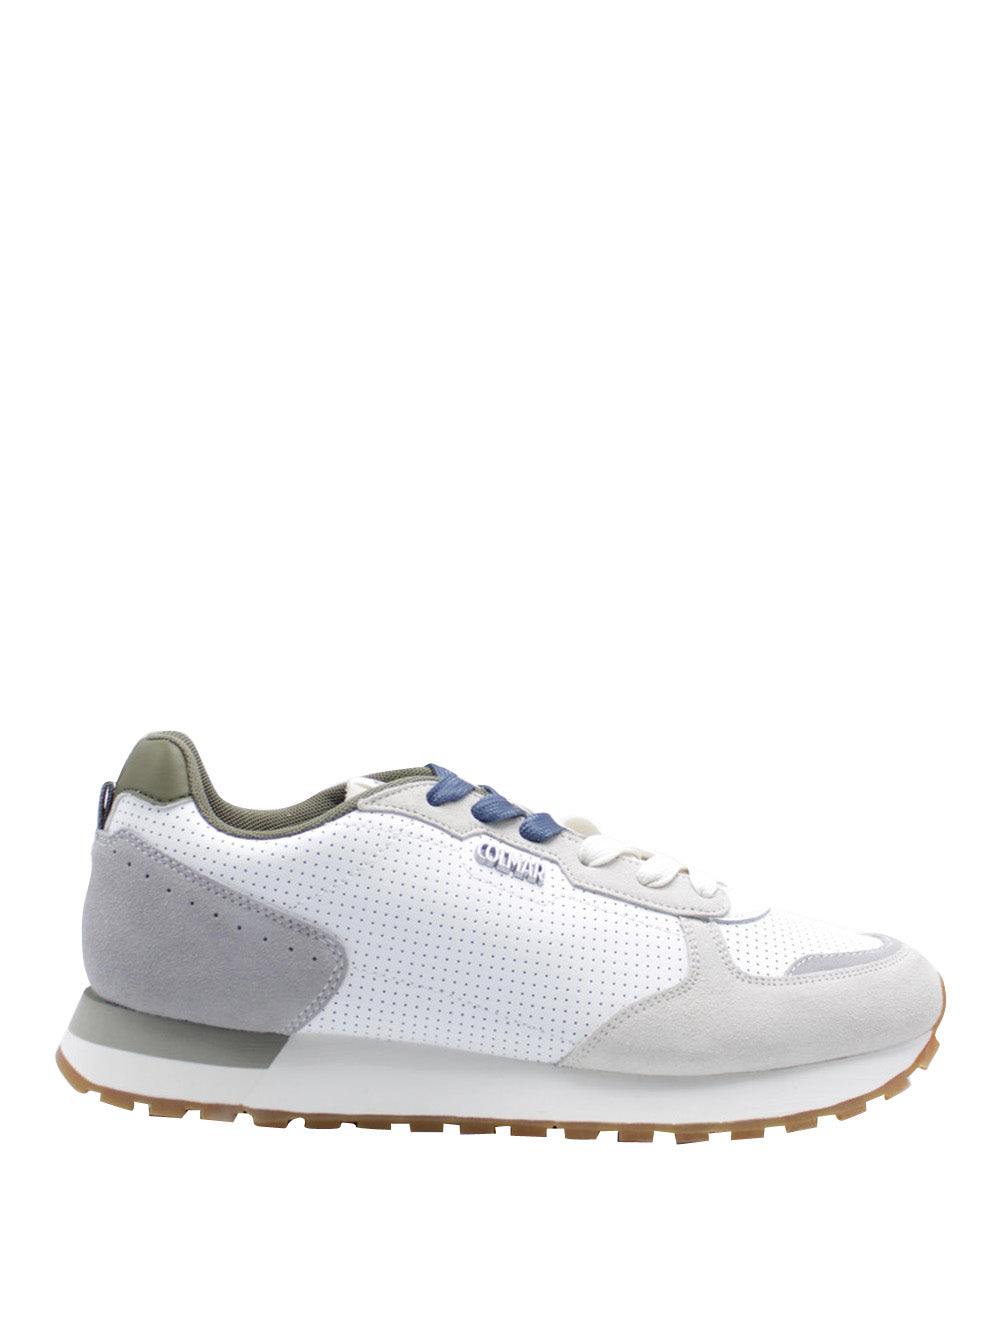 COLMAR Sneakers Uomo - Bianco modello TRAVISACTUAL